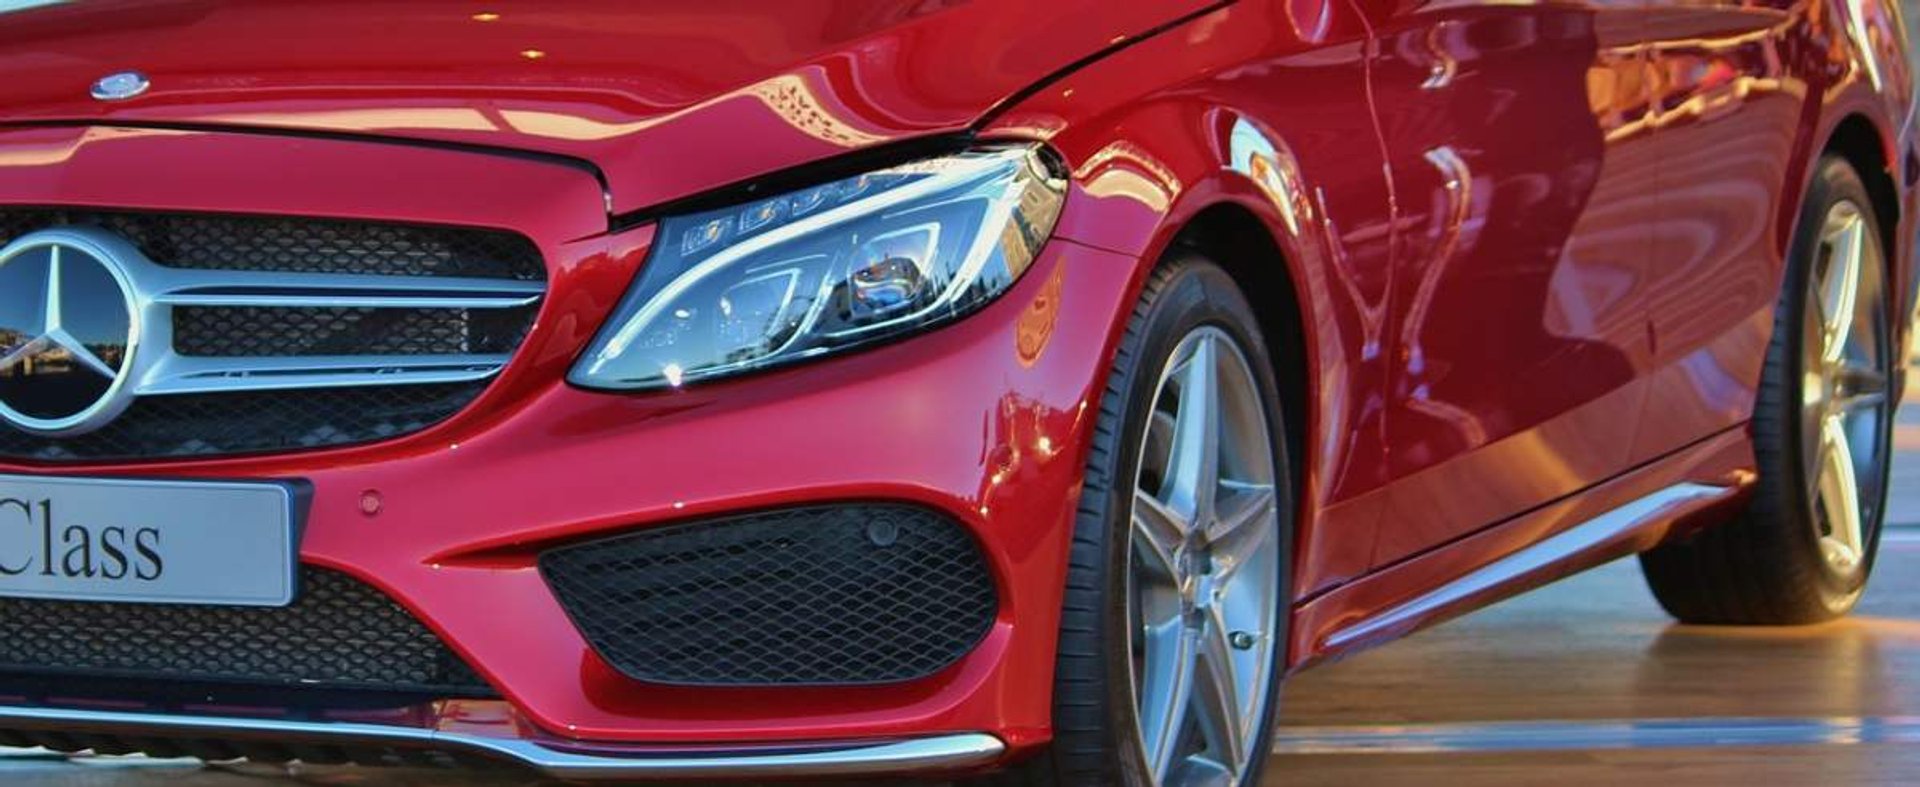 Mercedes klasy C – styl i osiągi, których poprawiać nie trzeba